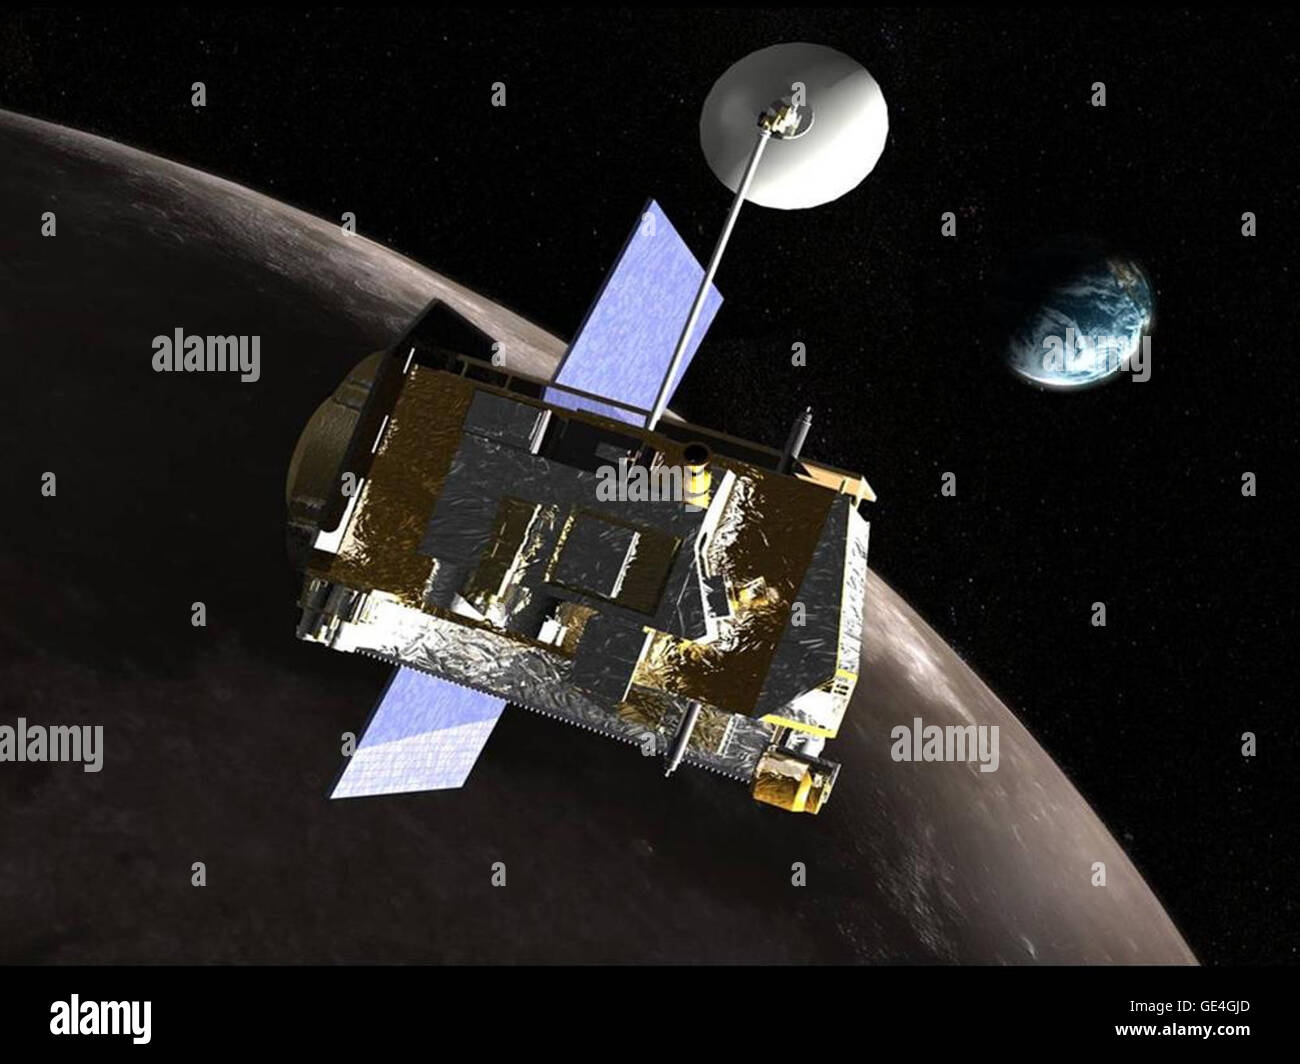 Image Credit: NASA Beschreibung LRO steht für Lunar Reconnaissance Orbiter. Es ist eine unbemannte Raumfahrzeuge, die im Orbit oder um den Mond herum fliegen. Es ist das Fotografieren und sammeln von Informationen über die Oberfläche des Mondes. LRO im Juni 2009 ins Leben gerufen.  LRO wird dazu beitragen, Karten der gesamten Mondoberfläche. Es sucht nach Eis und Frost an den Mond Polen. Wassereis kann für viele Dinge, einschließlich Raketentreibstoff verwendet werden. Zur Suche nach Wassereis wird das Raumschiff Schattenbereiche des Mondes fotografieren, die nur durch Sternenlicht beleuchtet werden. Stockfoto